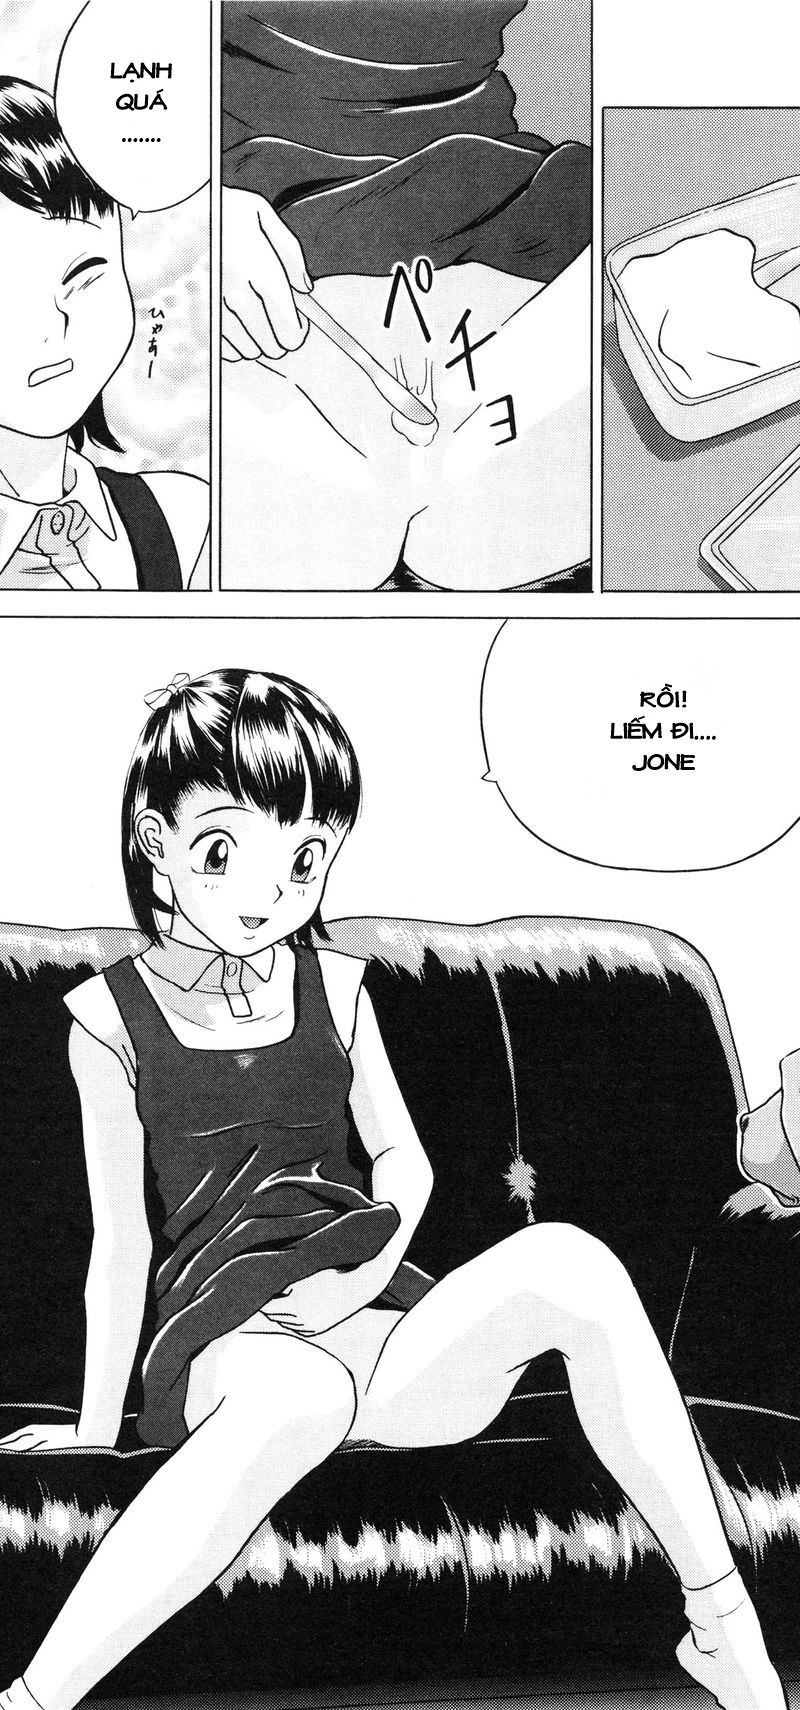 [Loli] Lolita Girls Collection Chapter 3: Jone, Tôi, và Onii-chan - Trang 8